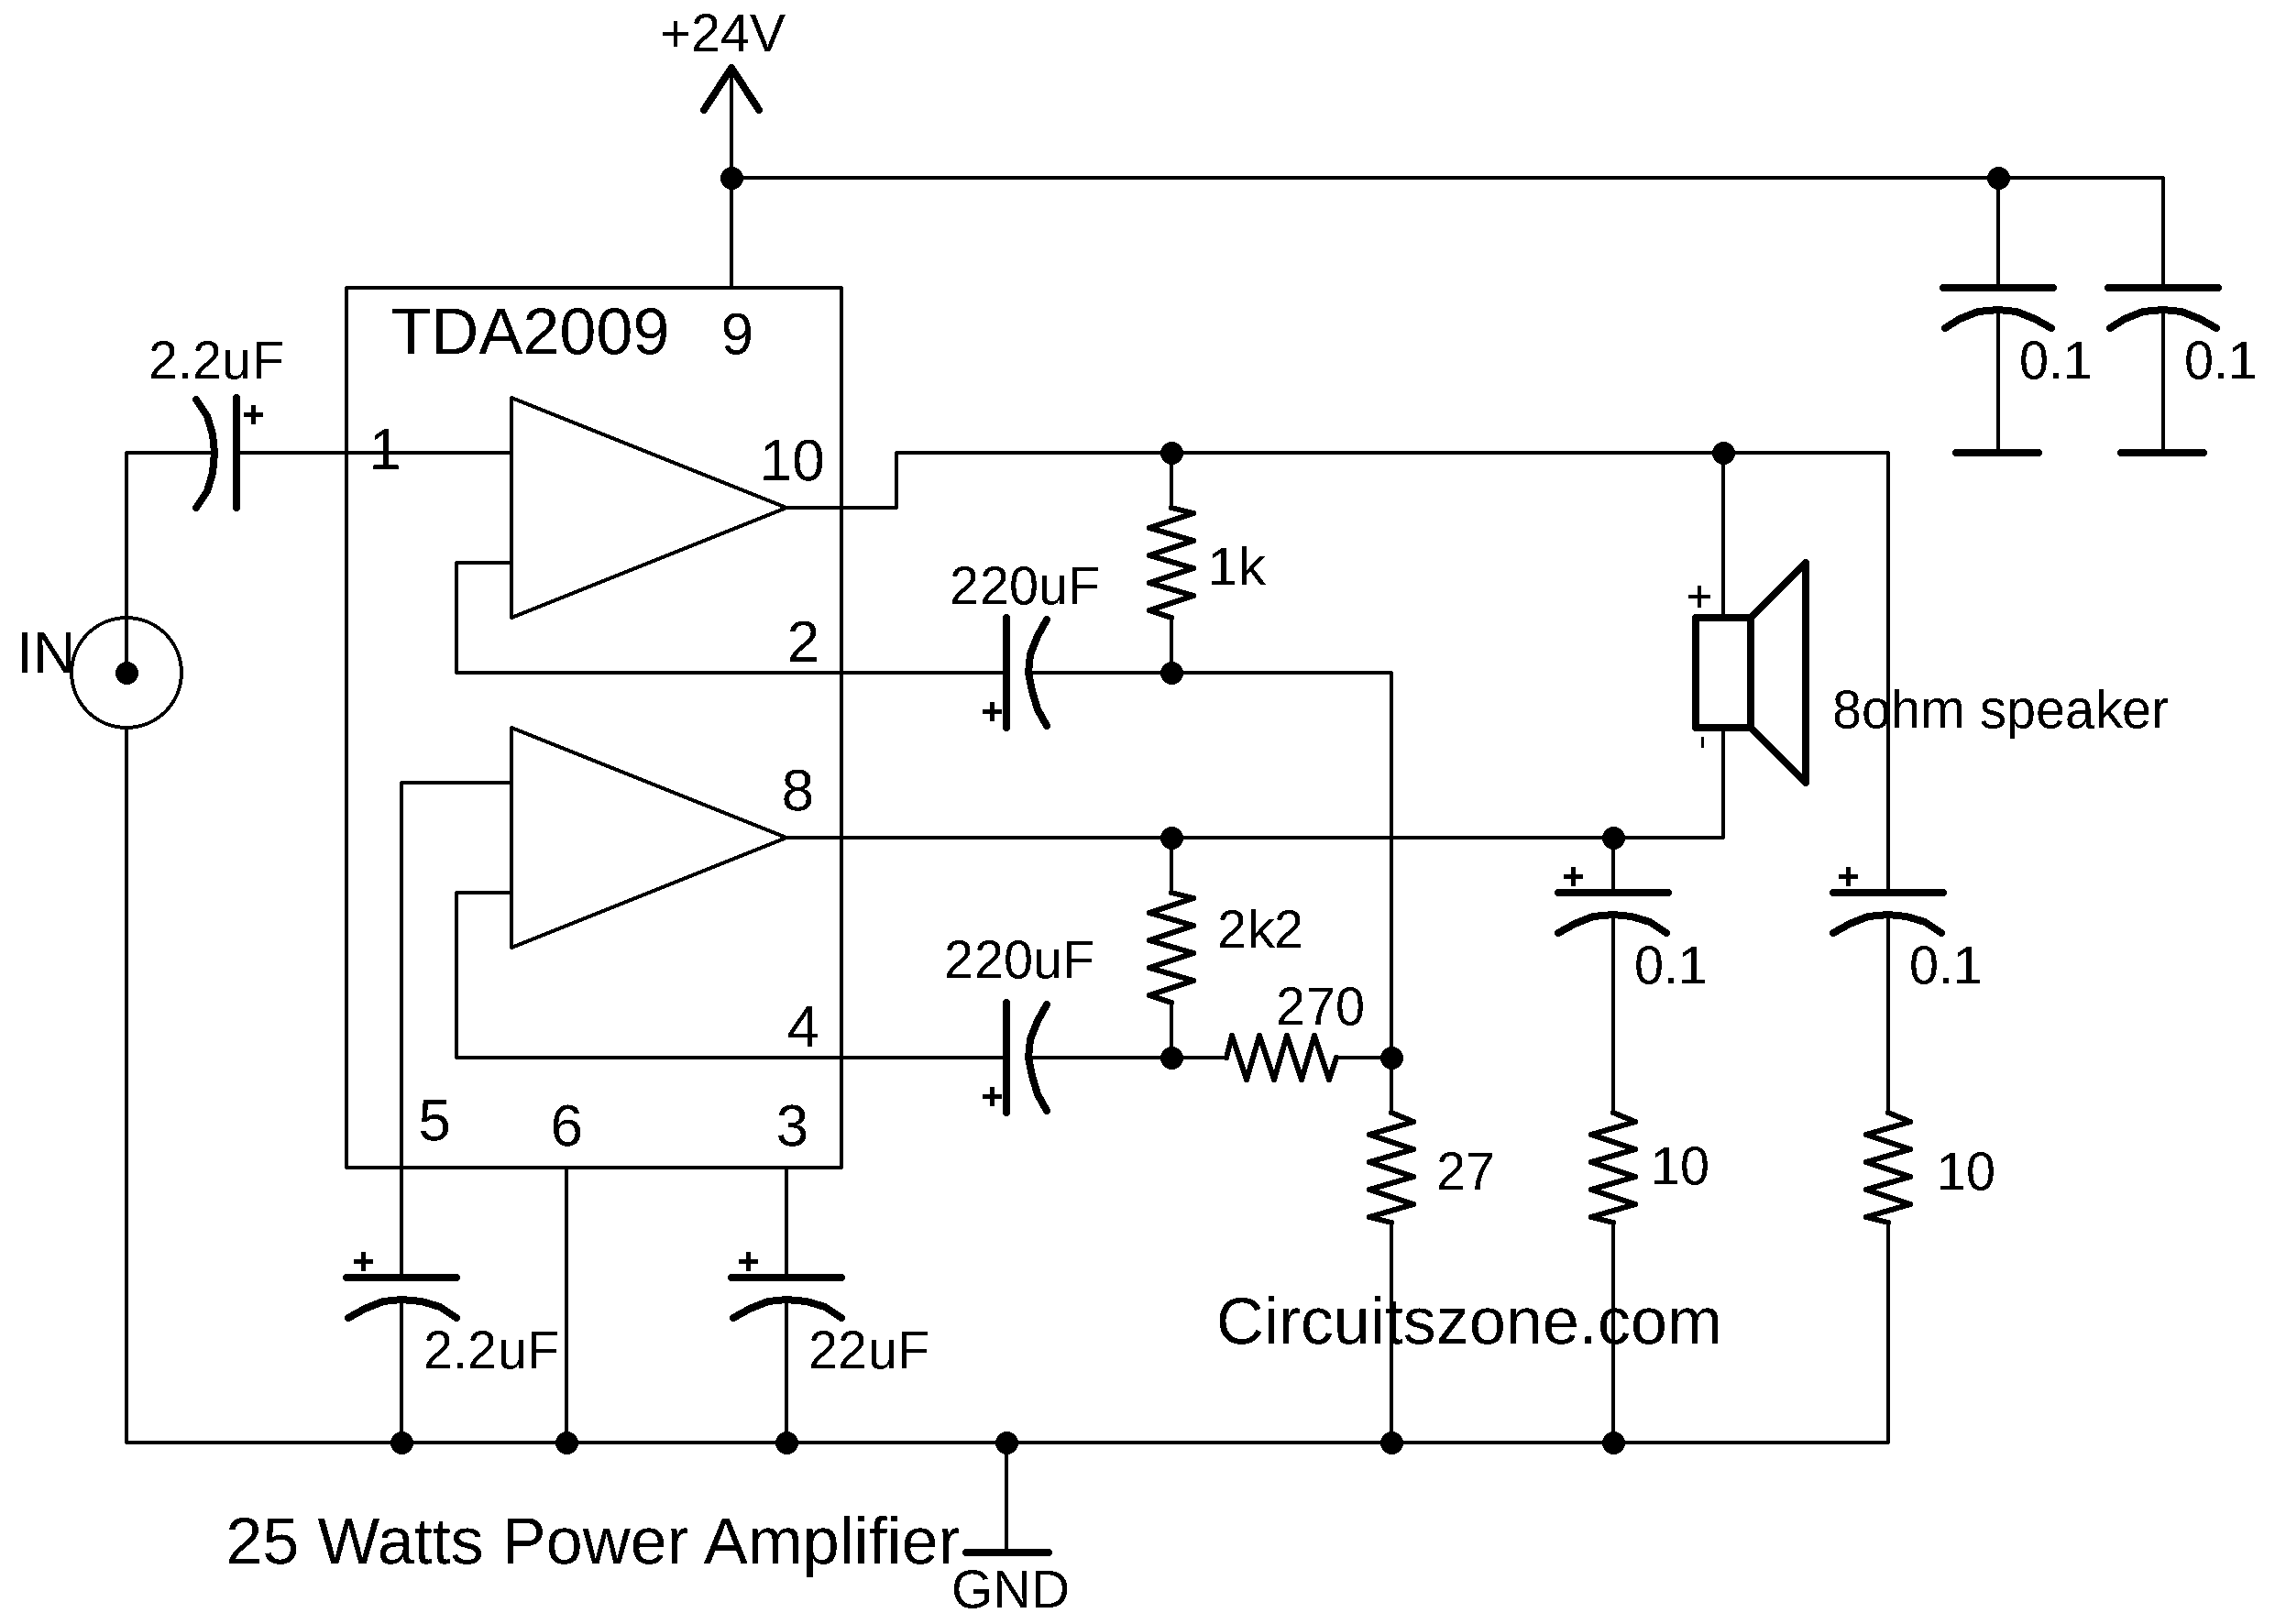 25 watt power amplifier